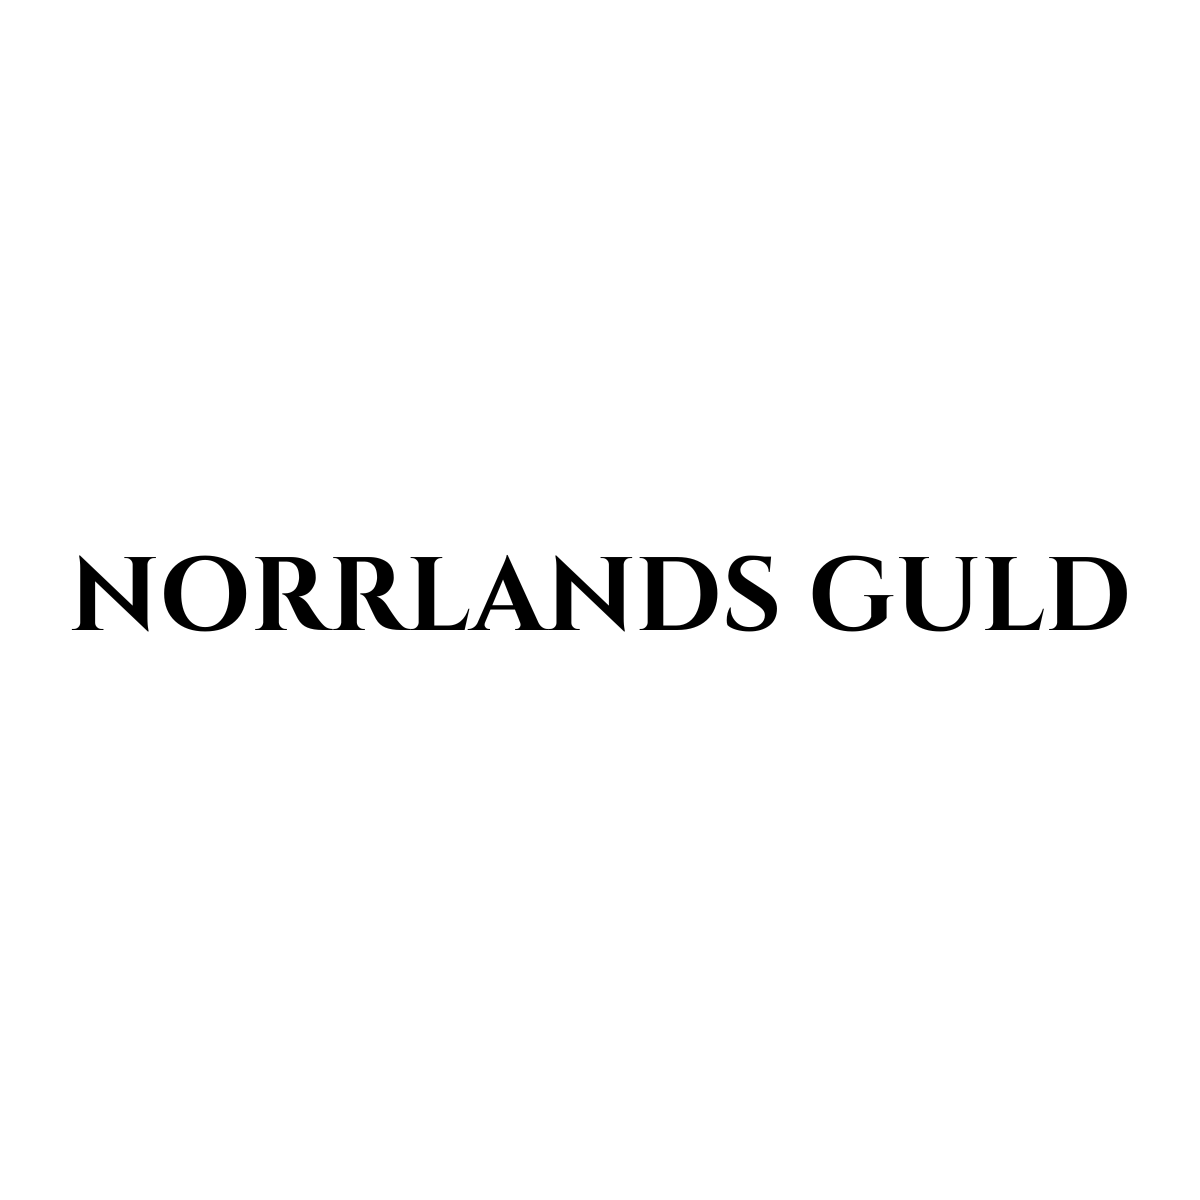 Norrlands guld